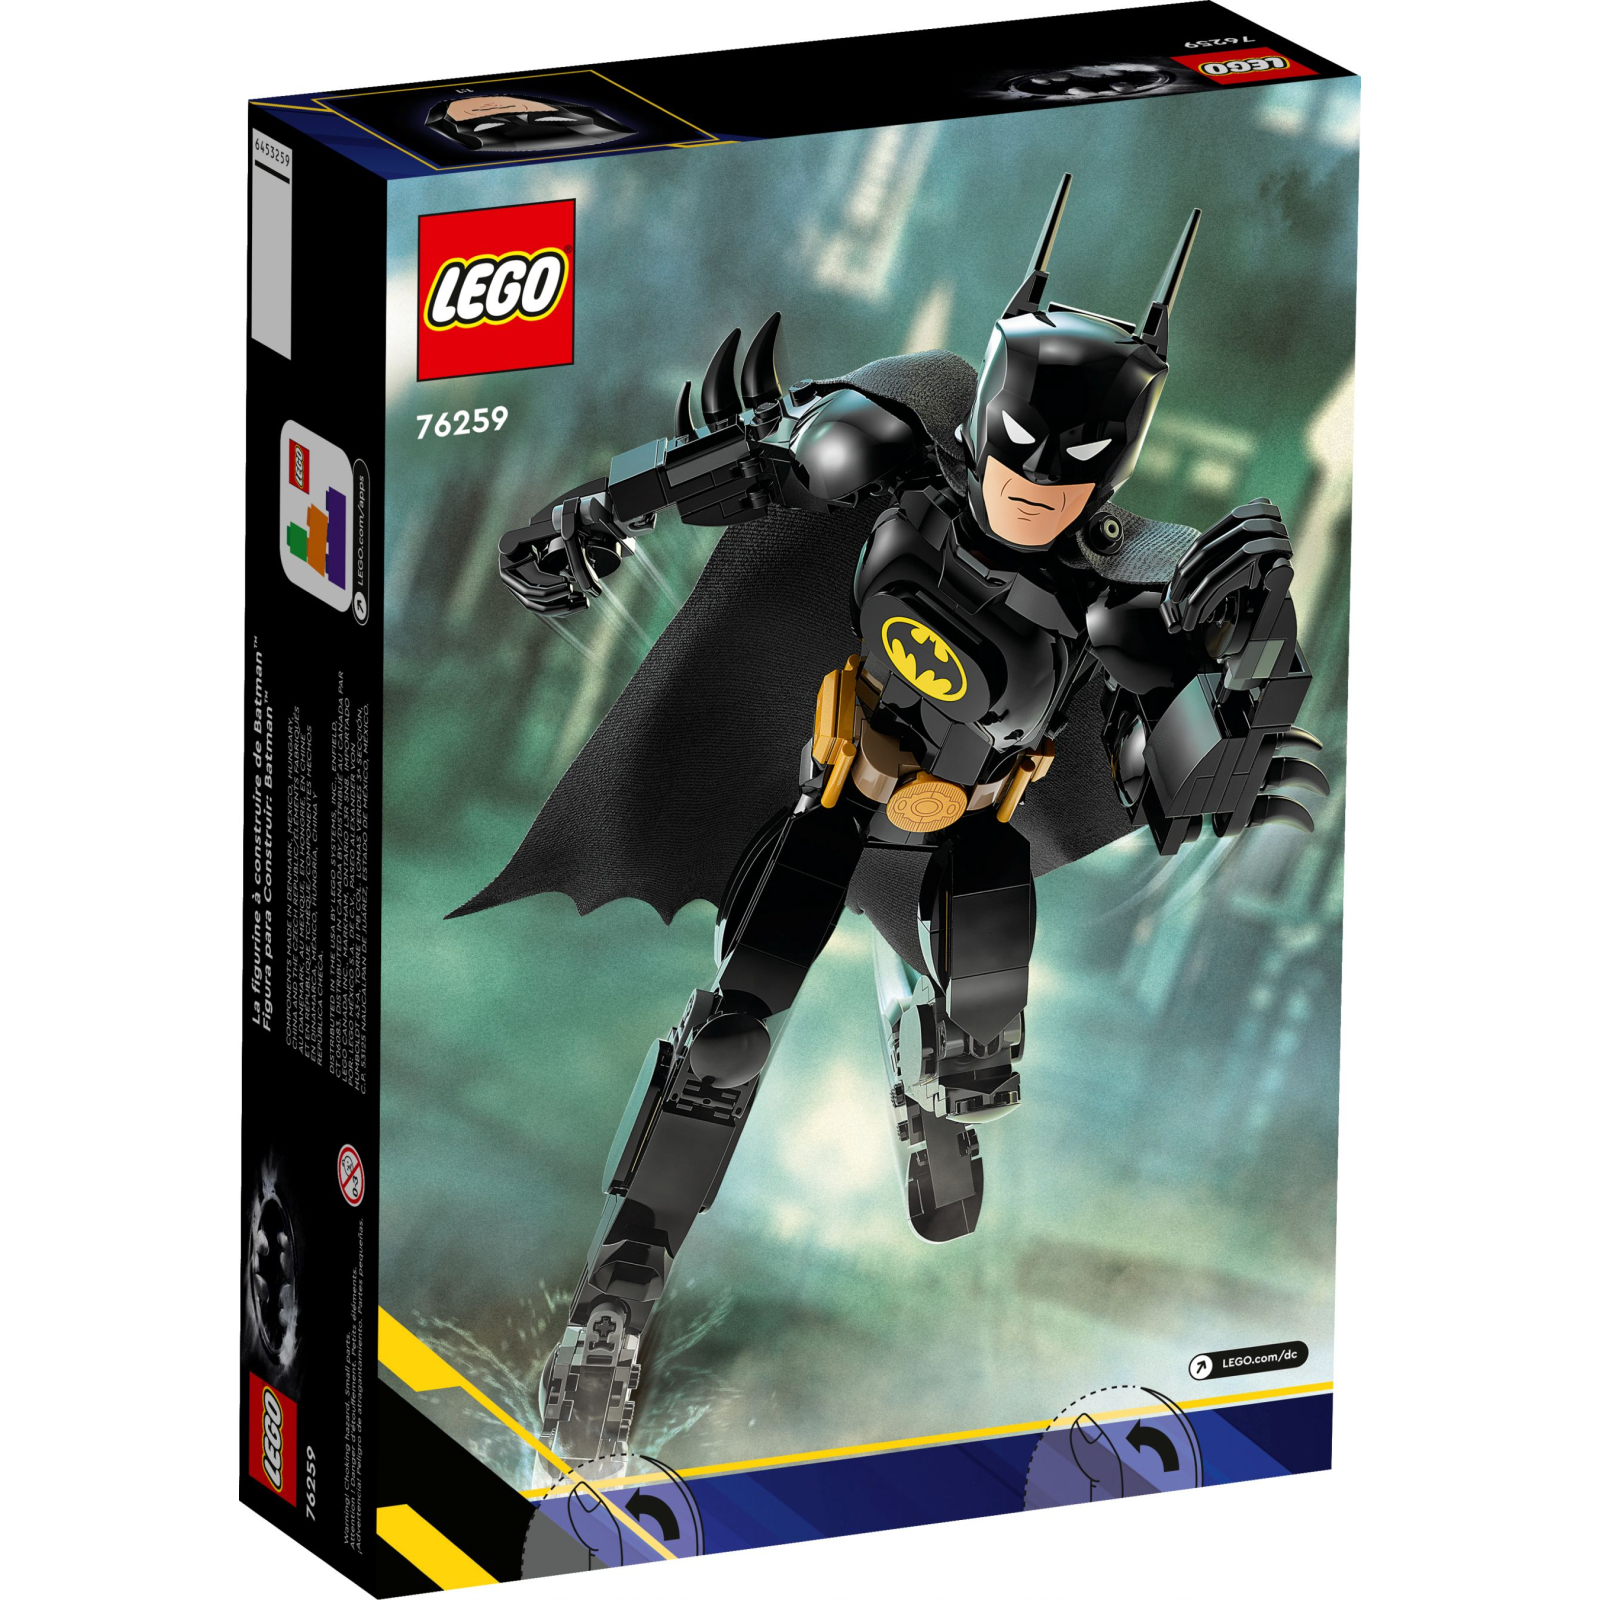 Конструктор LEGO Super Heroes Фигурка Бэтмена для сборки 275 деталей (76259) изображение 4